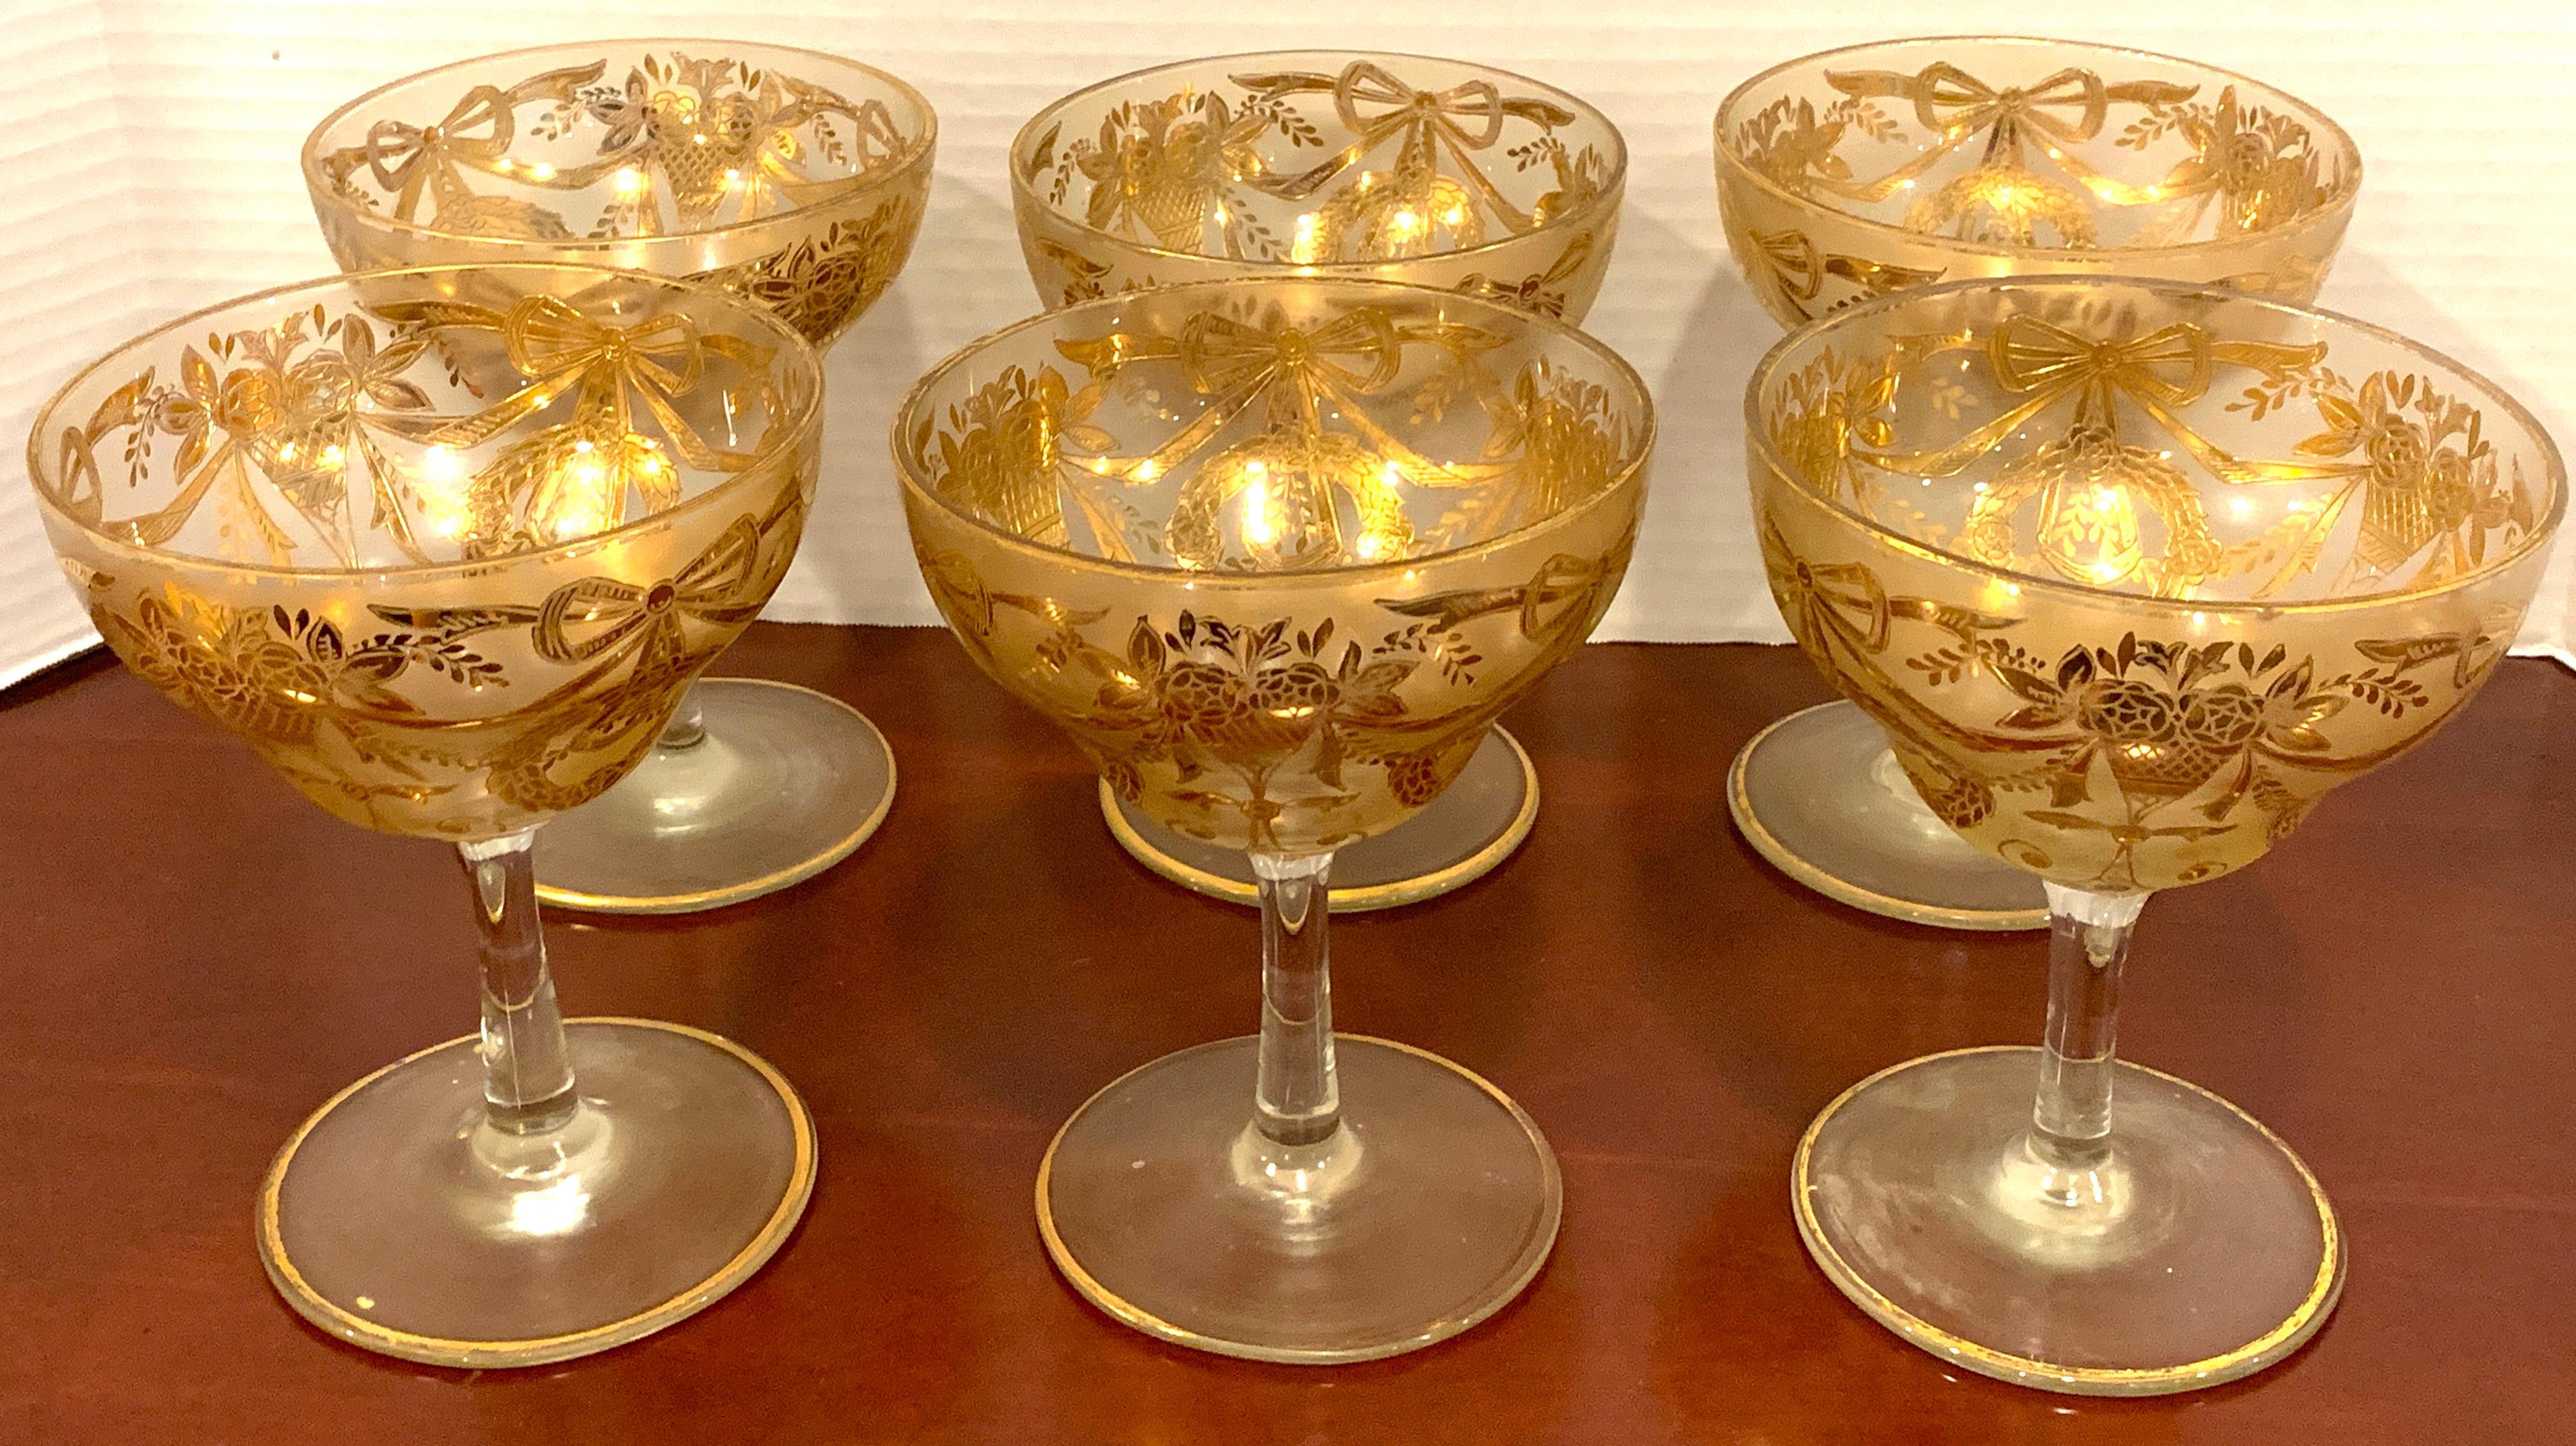 Ensemble de six grands coupes émaillés dorés/ dessert ou fruits de mer, à décor néoclassique doré en relief. Mesures : diamètre intérieur de 4